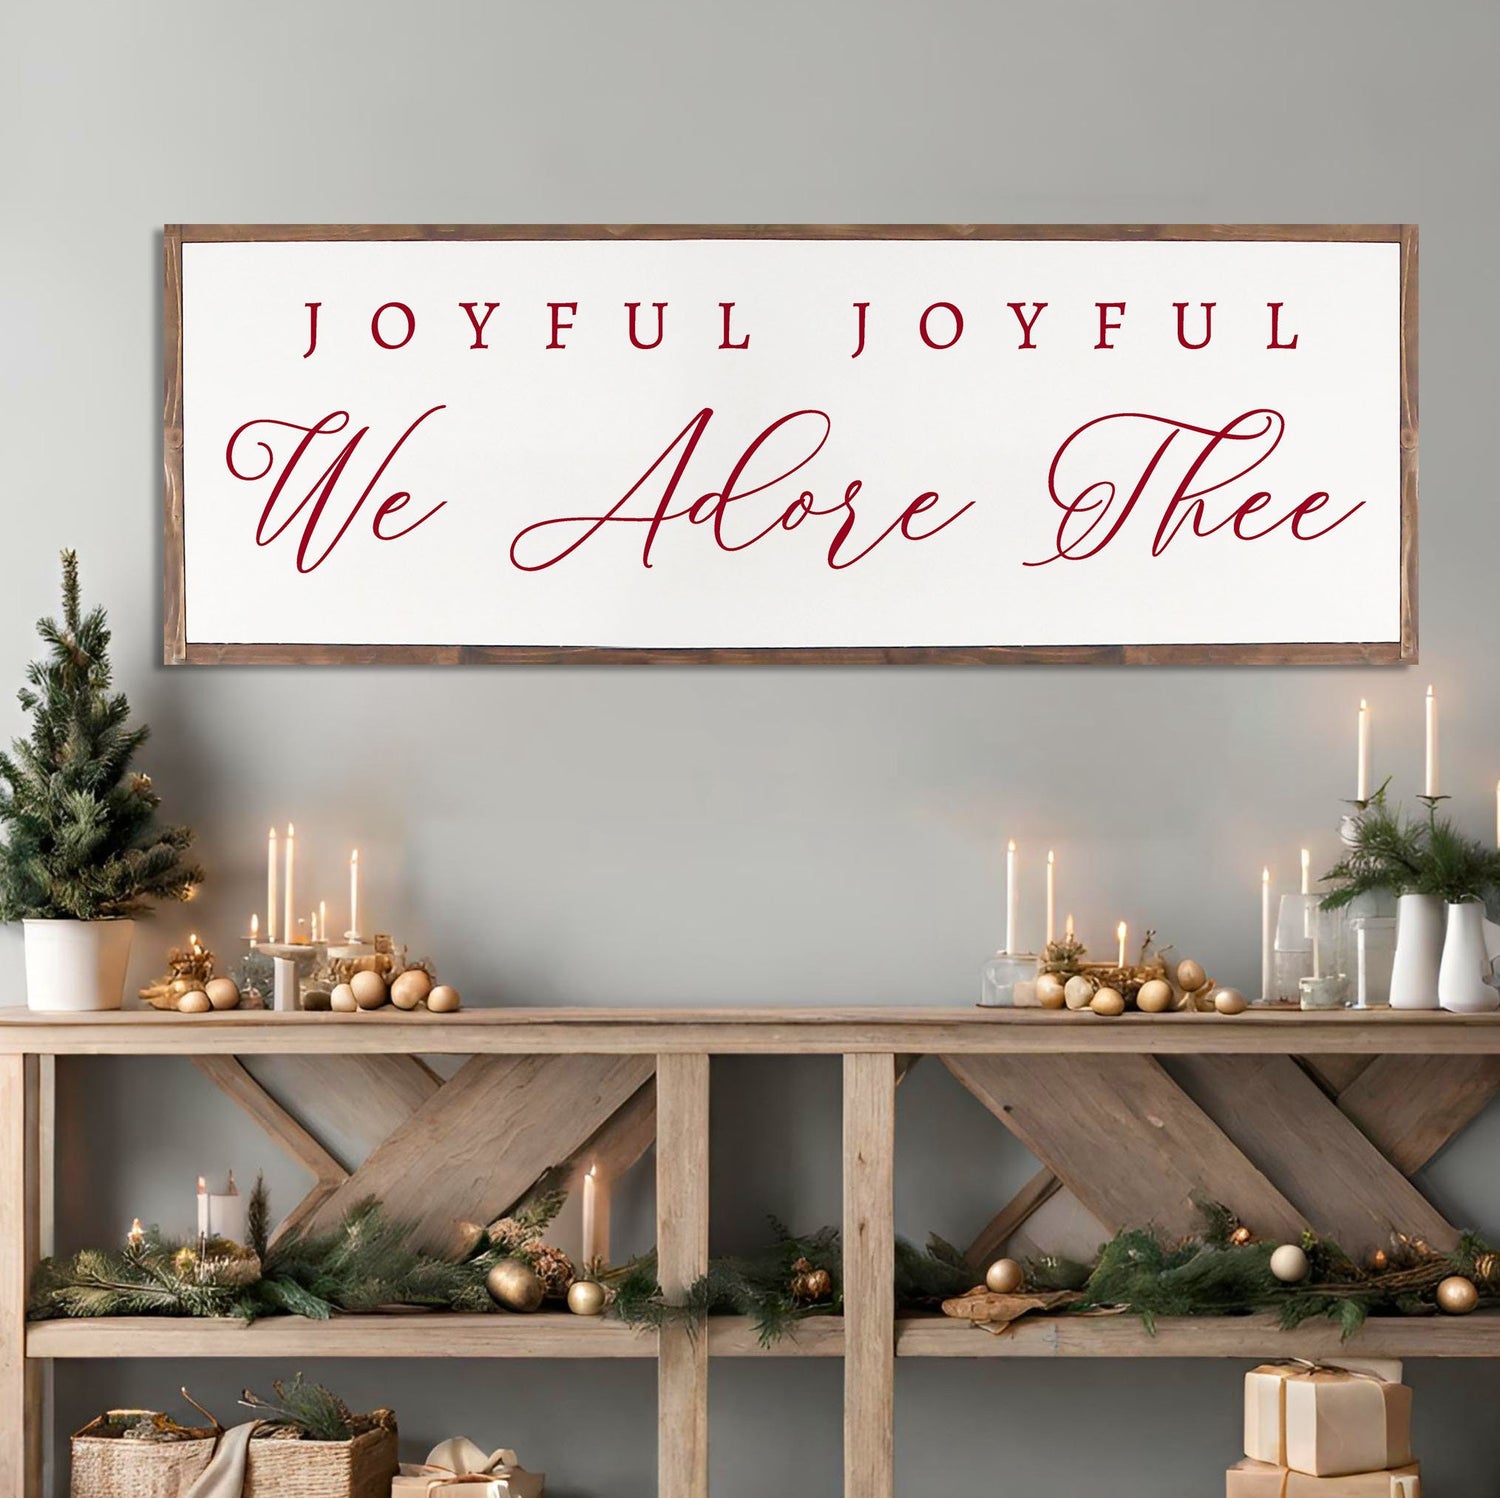 Joyful Joyful We Adore Thee - Christmas Home Décor, Modern Farmhouse Wood Sign | Large Christmas sign | Christmas Décor, Christian Wall Art